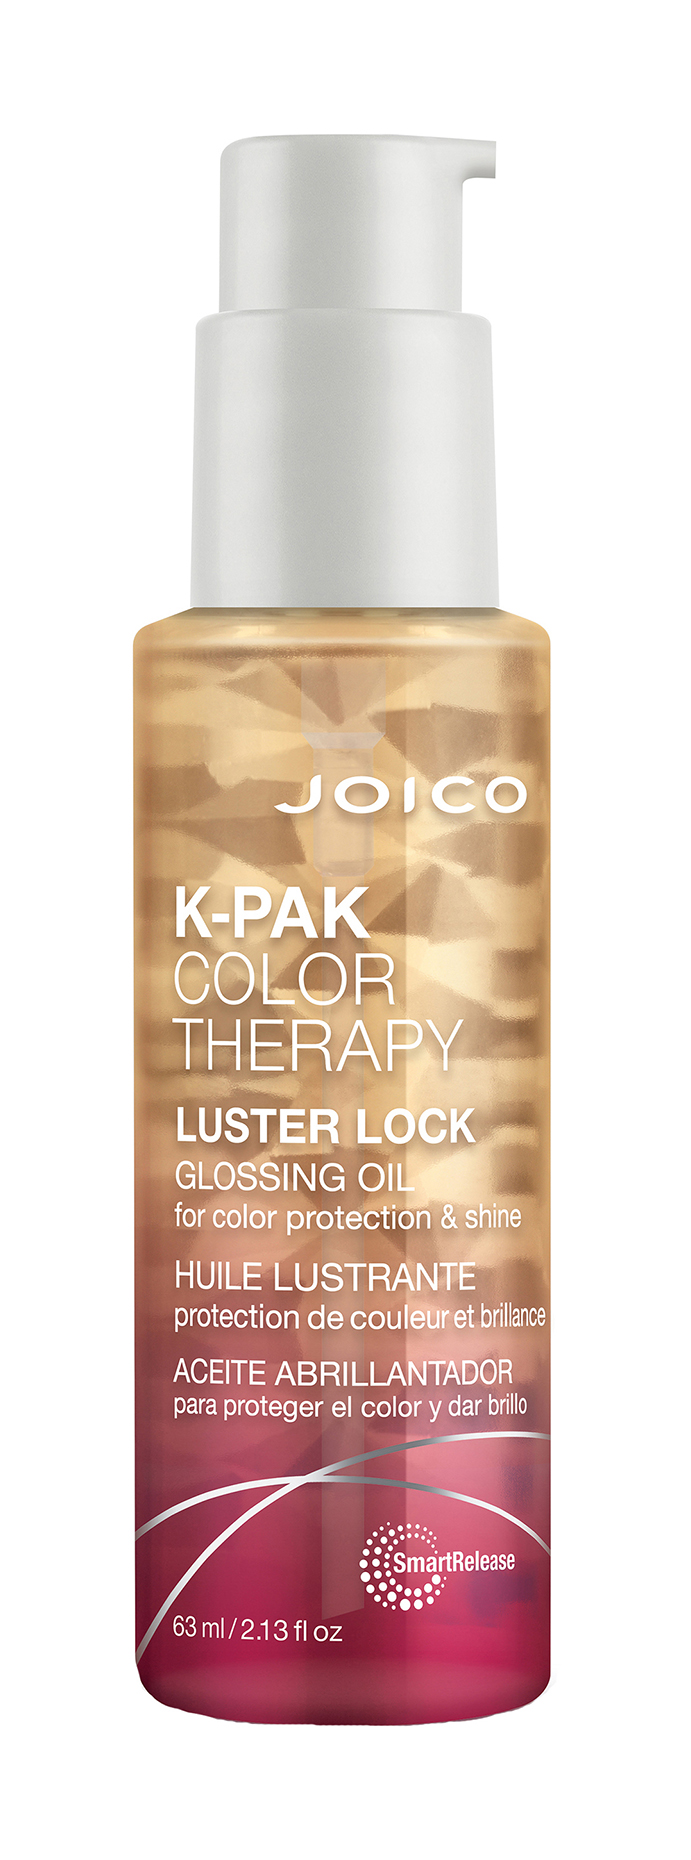 Масло для волос Joico K-Pak Color Therapy Luster Lock Glossing Oil для защиты цвета, 63 мл масло для волос pantene восстановление кератина с витамином е 100 мл